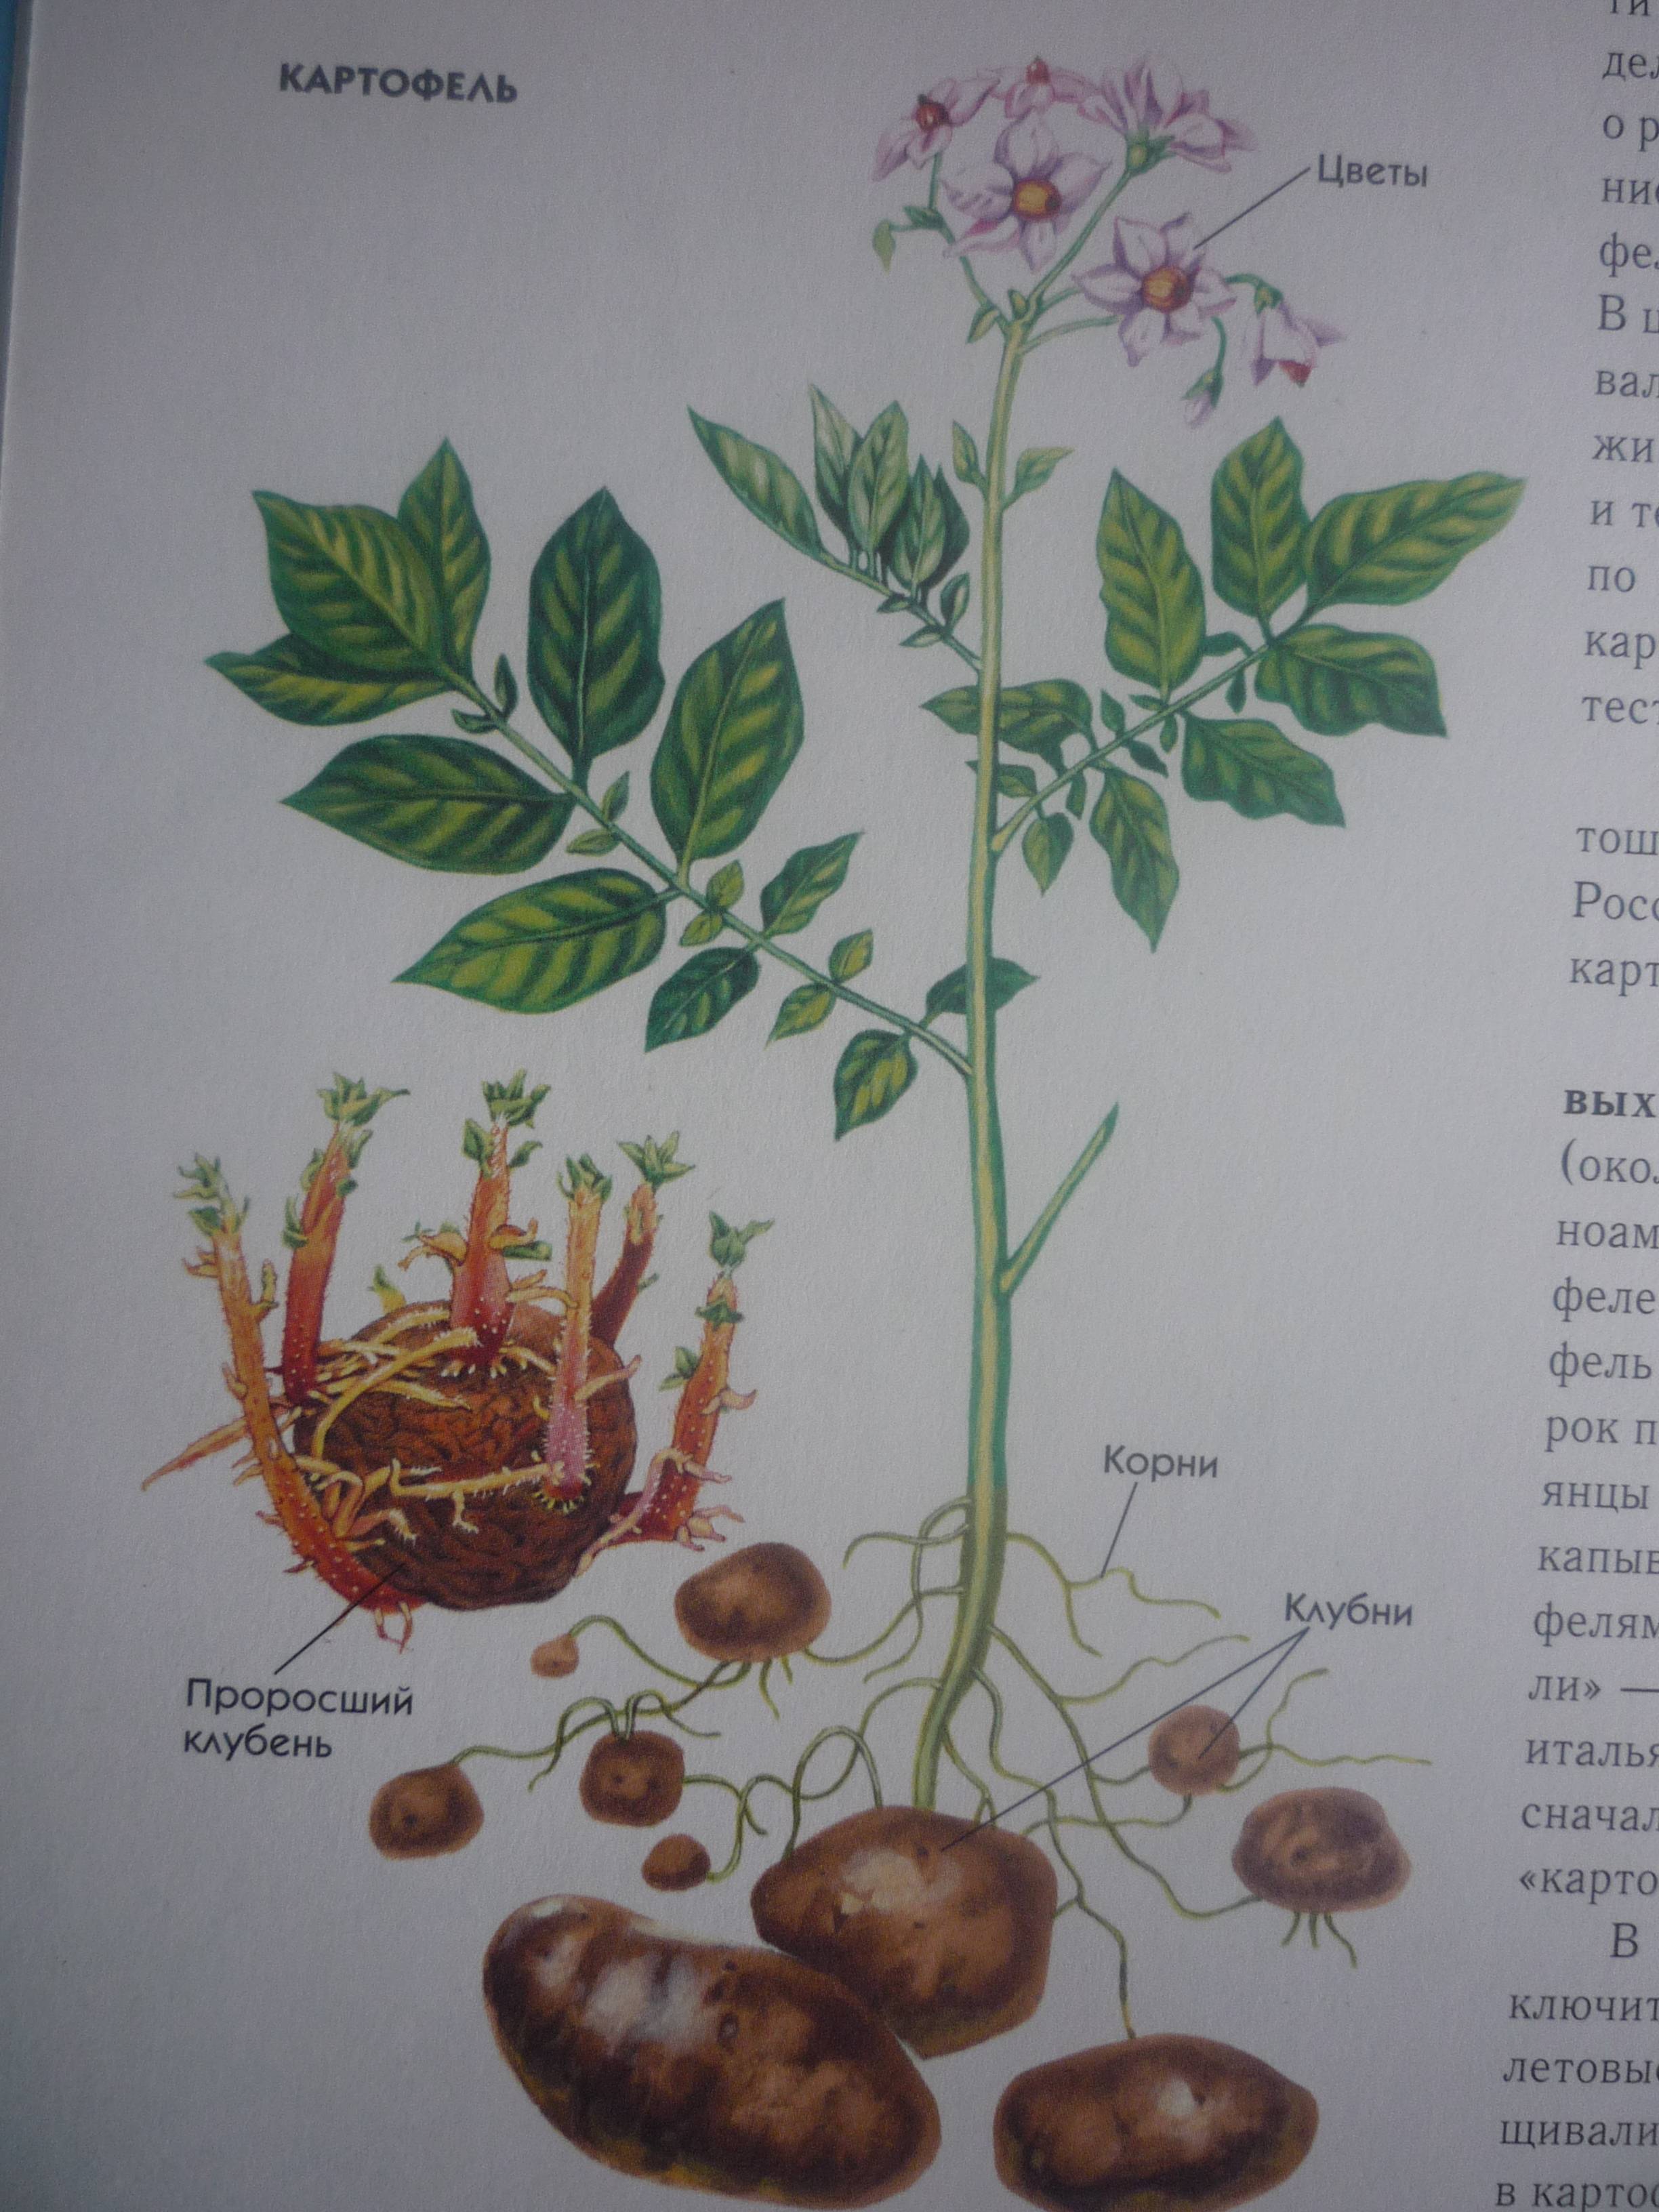 Сорта картофеля: описание, названия с фото, характеристики